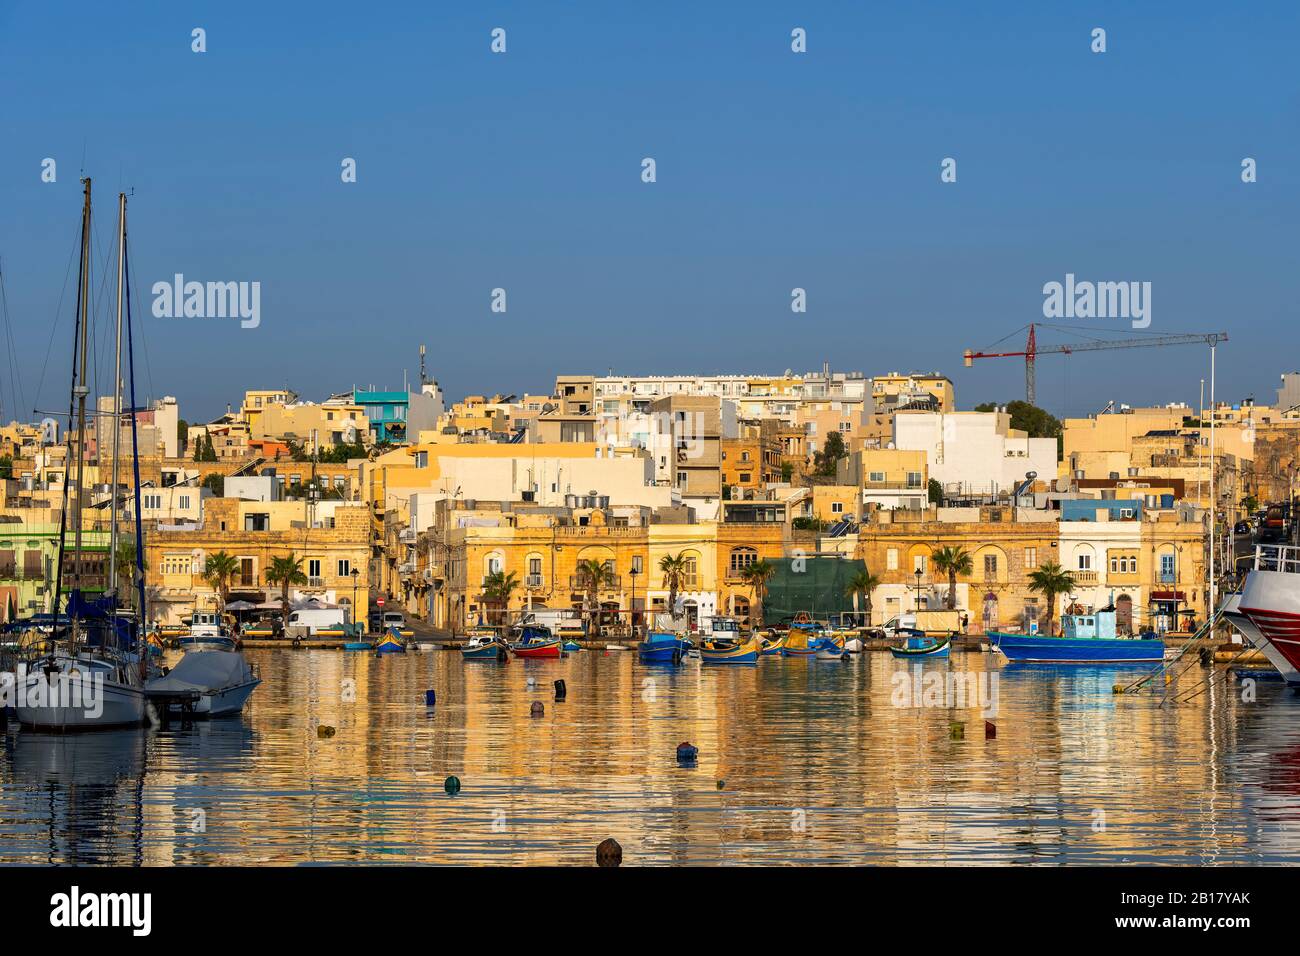 Malta, Marsaxlokk, Fishing town skyline and Mediterranean Sea Stock Photo